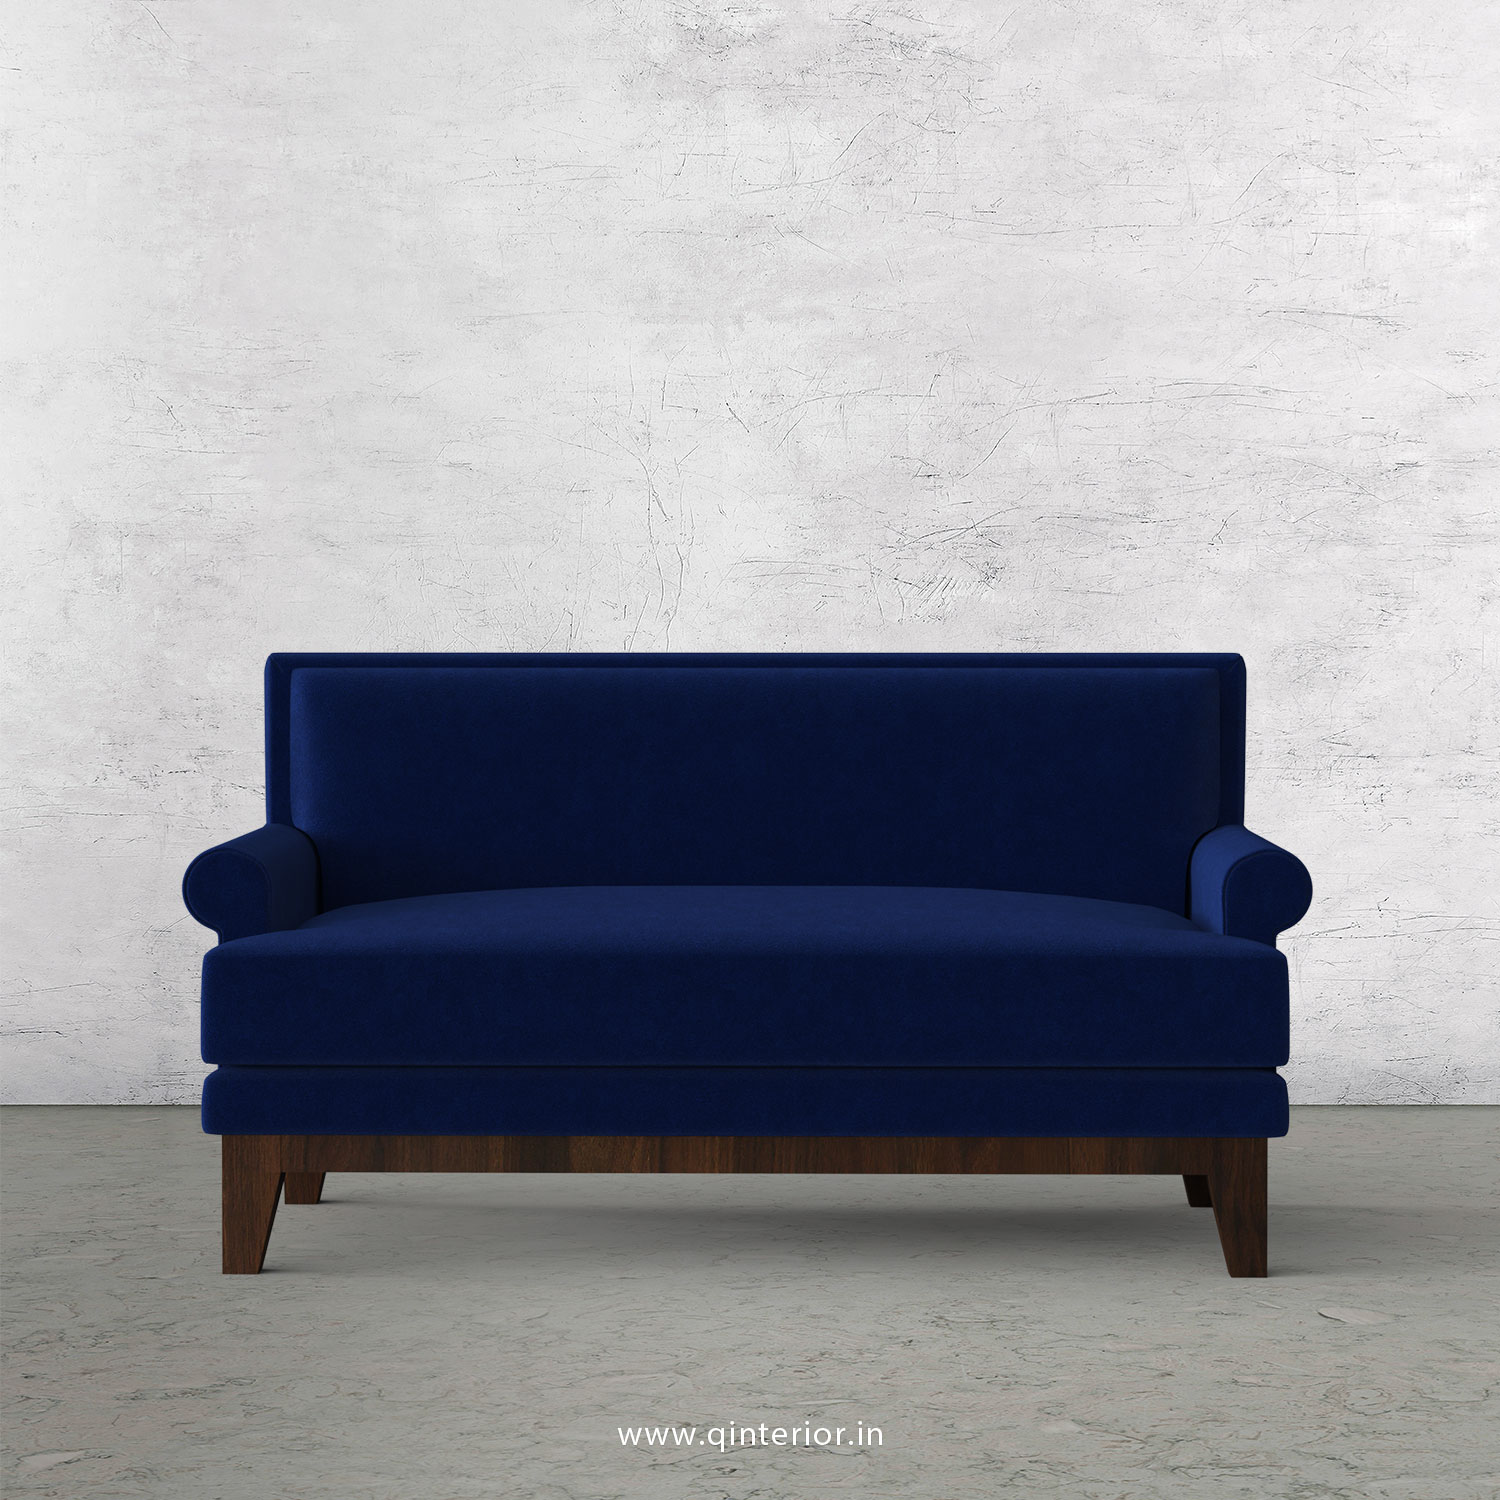 Aviana 2 Seater Sofa in Velvet Fabric - SFA001 VL05